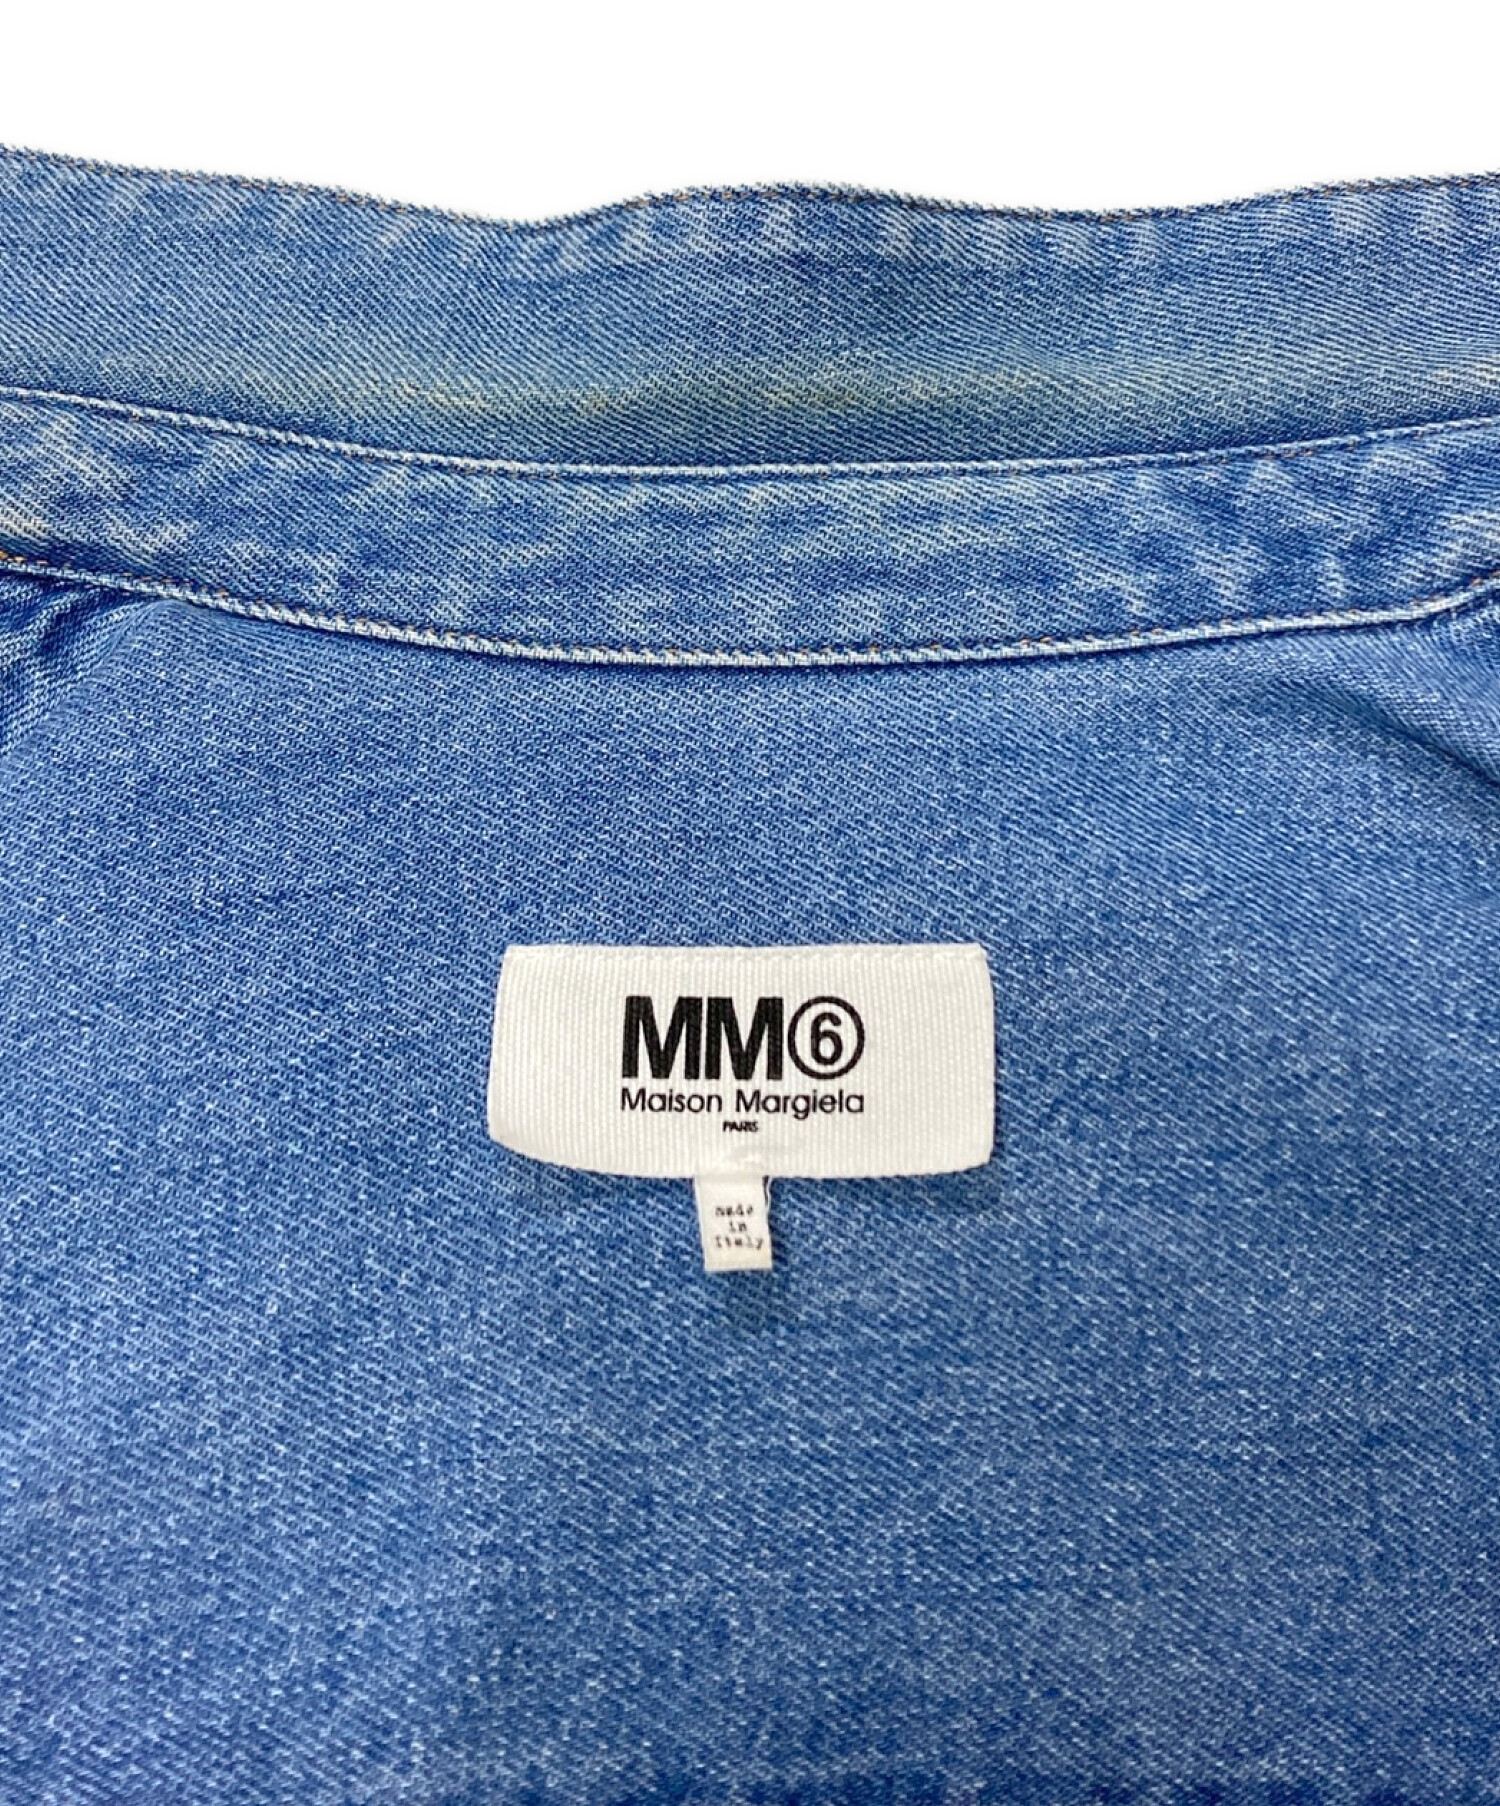 MM6 Maison Margiela (エムエムシックス メゾンマルジェラ) オーバーサイズ デニムジャケット インディゴ サイズ:38